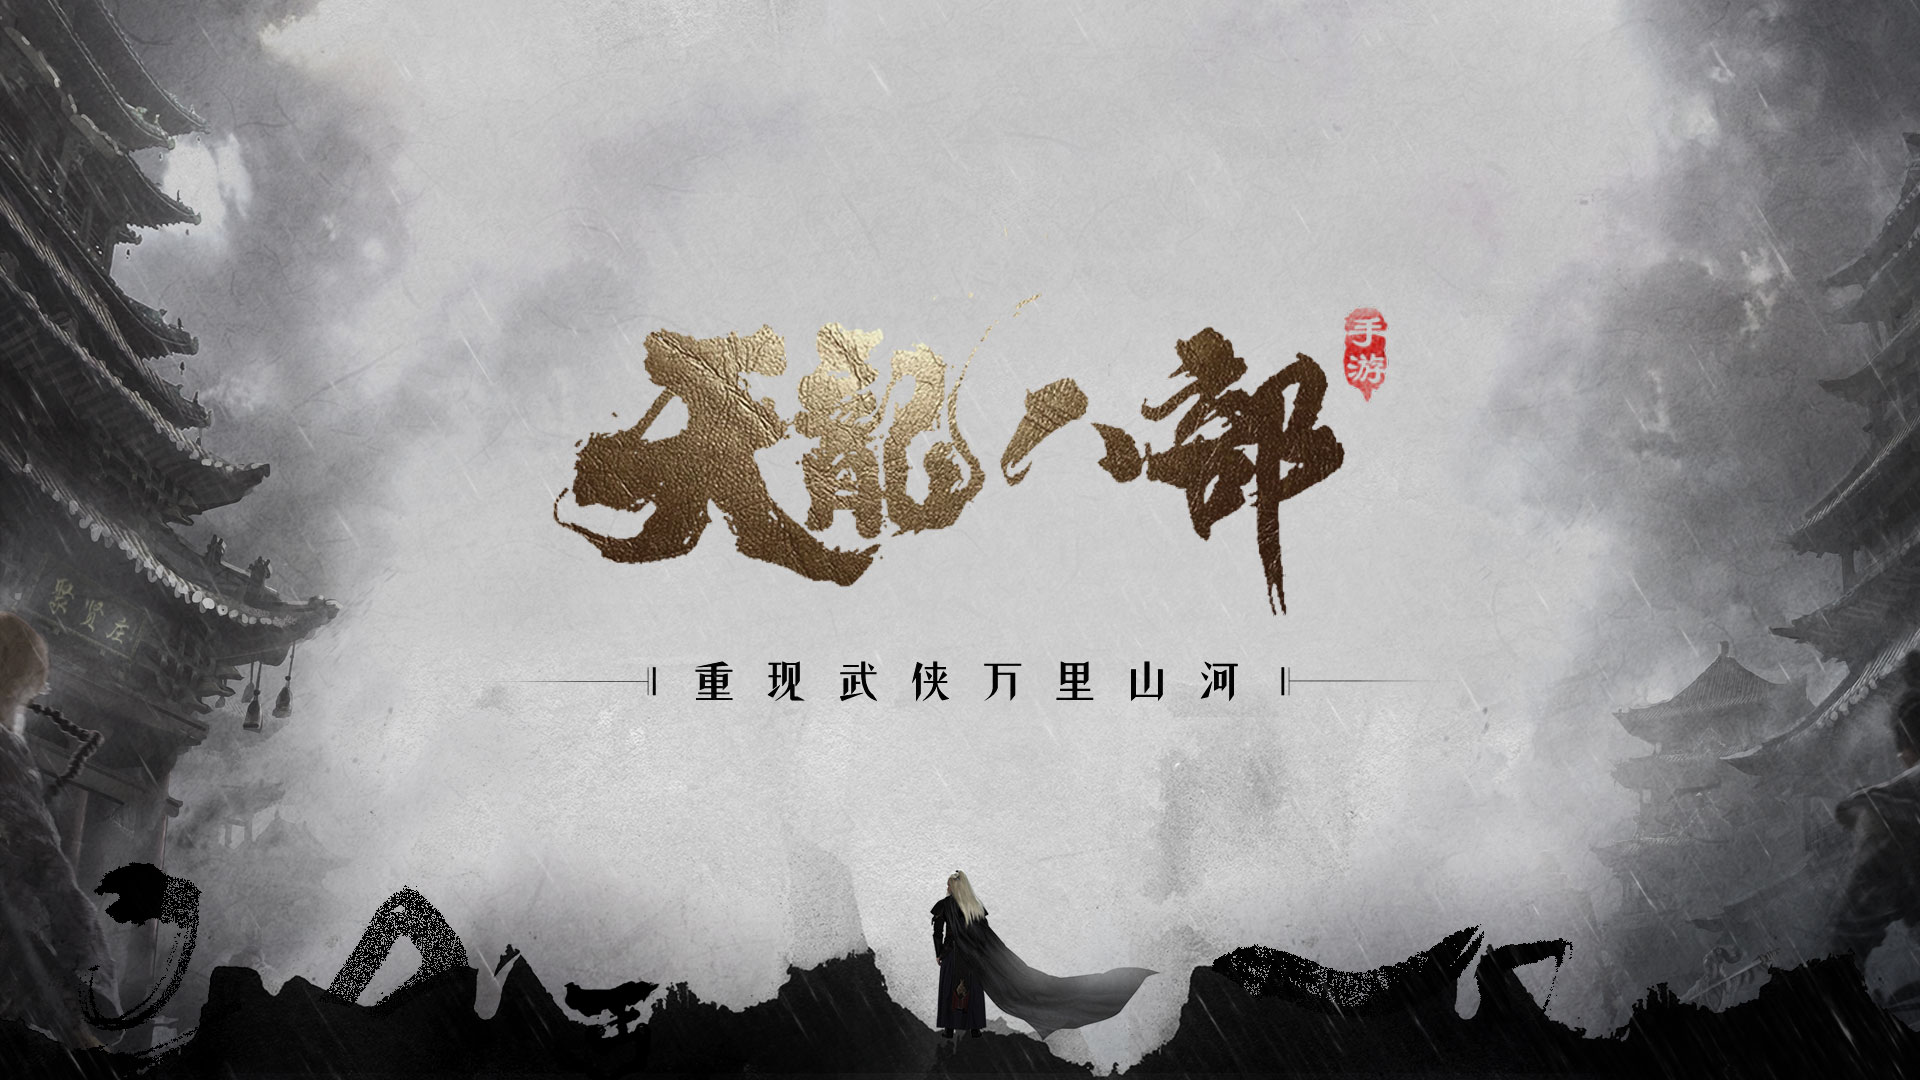 《天龙八部手游》亮相腾讯游戏年度发布会 首曝“重现武侠万里山河”计划